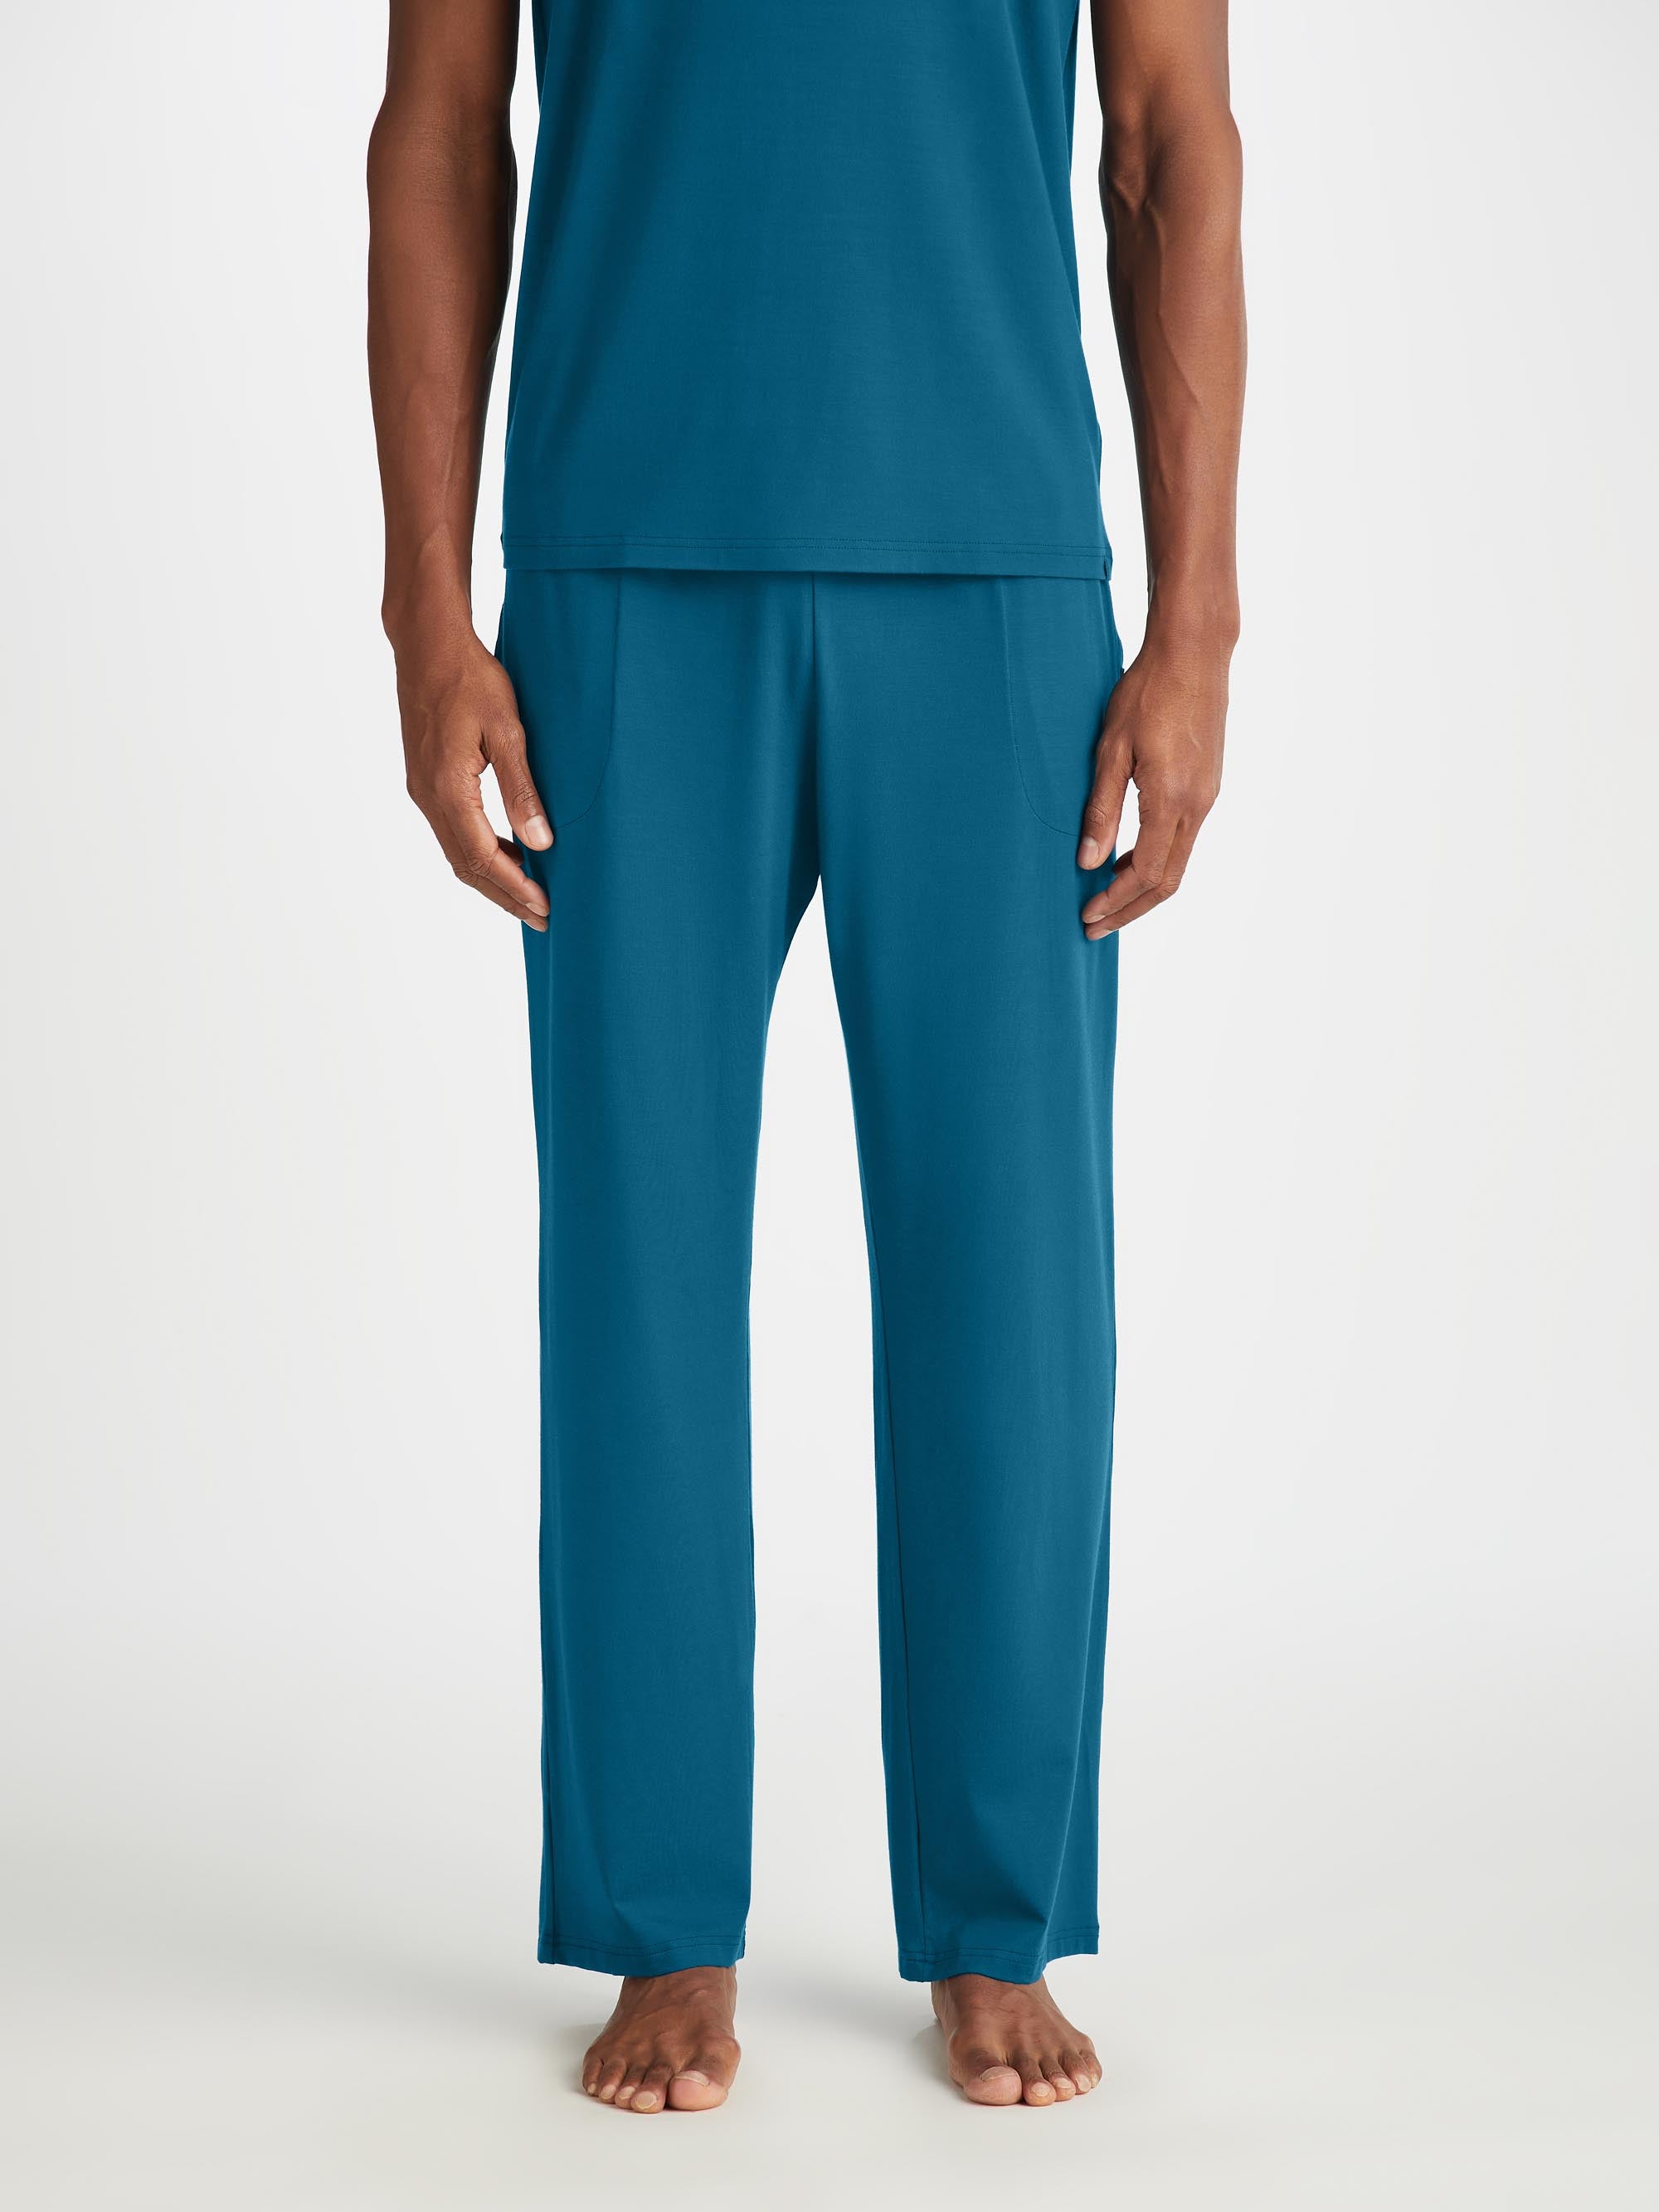 Men's Lounge Trousers Basel Micro Modal Stretch Poseidon Blue